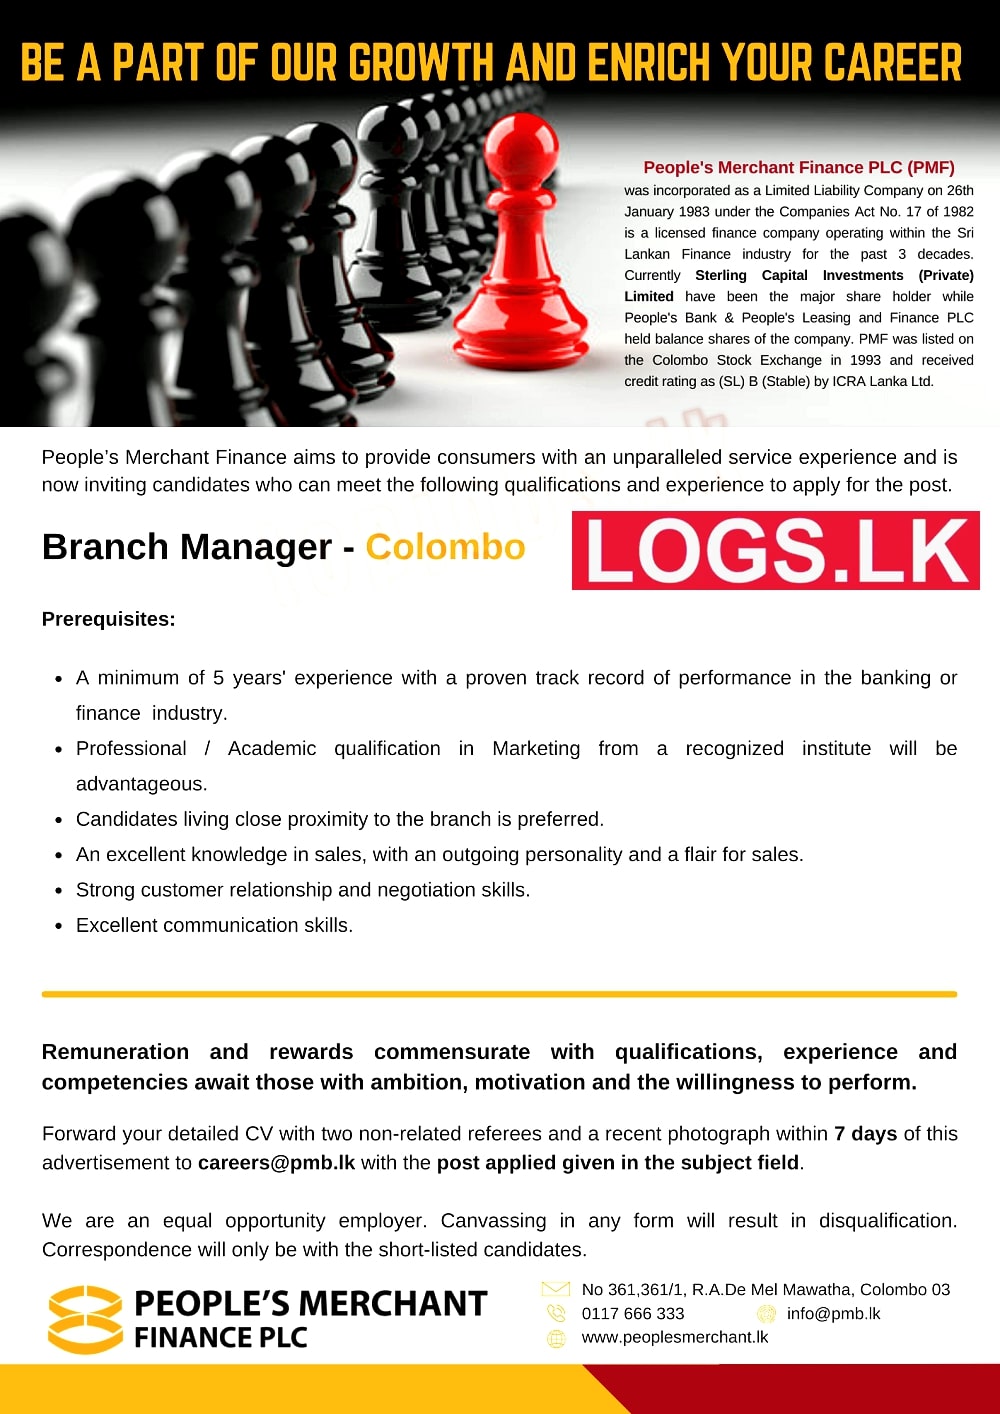 Branch Manager – Colombo Job Vacancy in Peoples Merchant Finance Jobs Vacancies